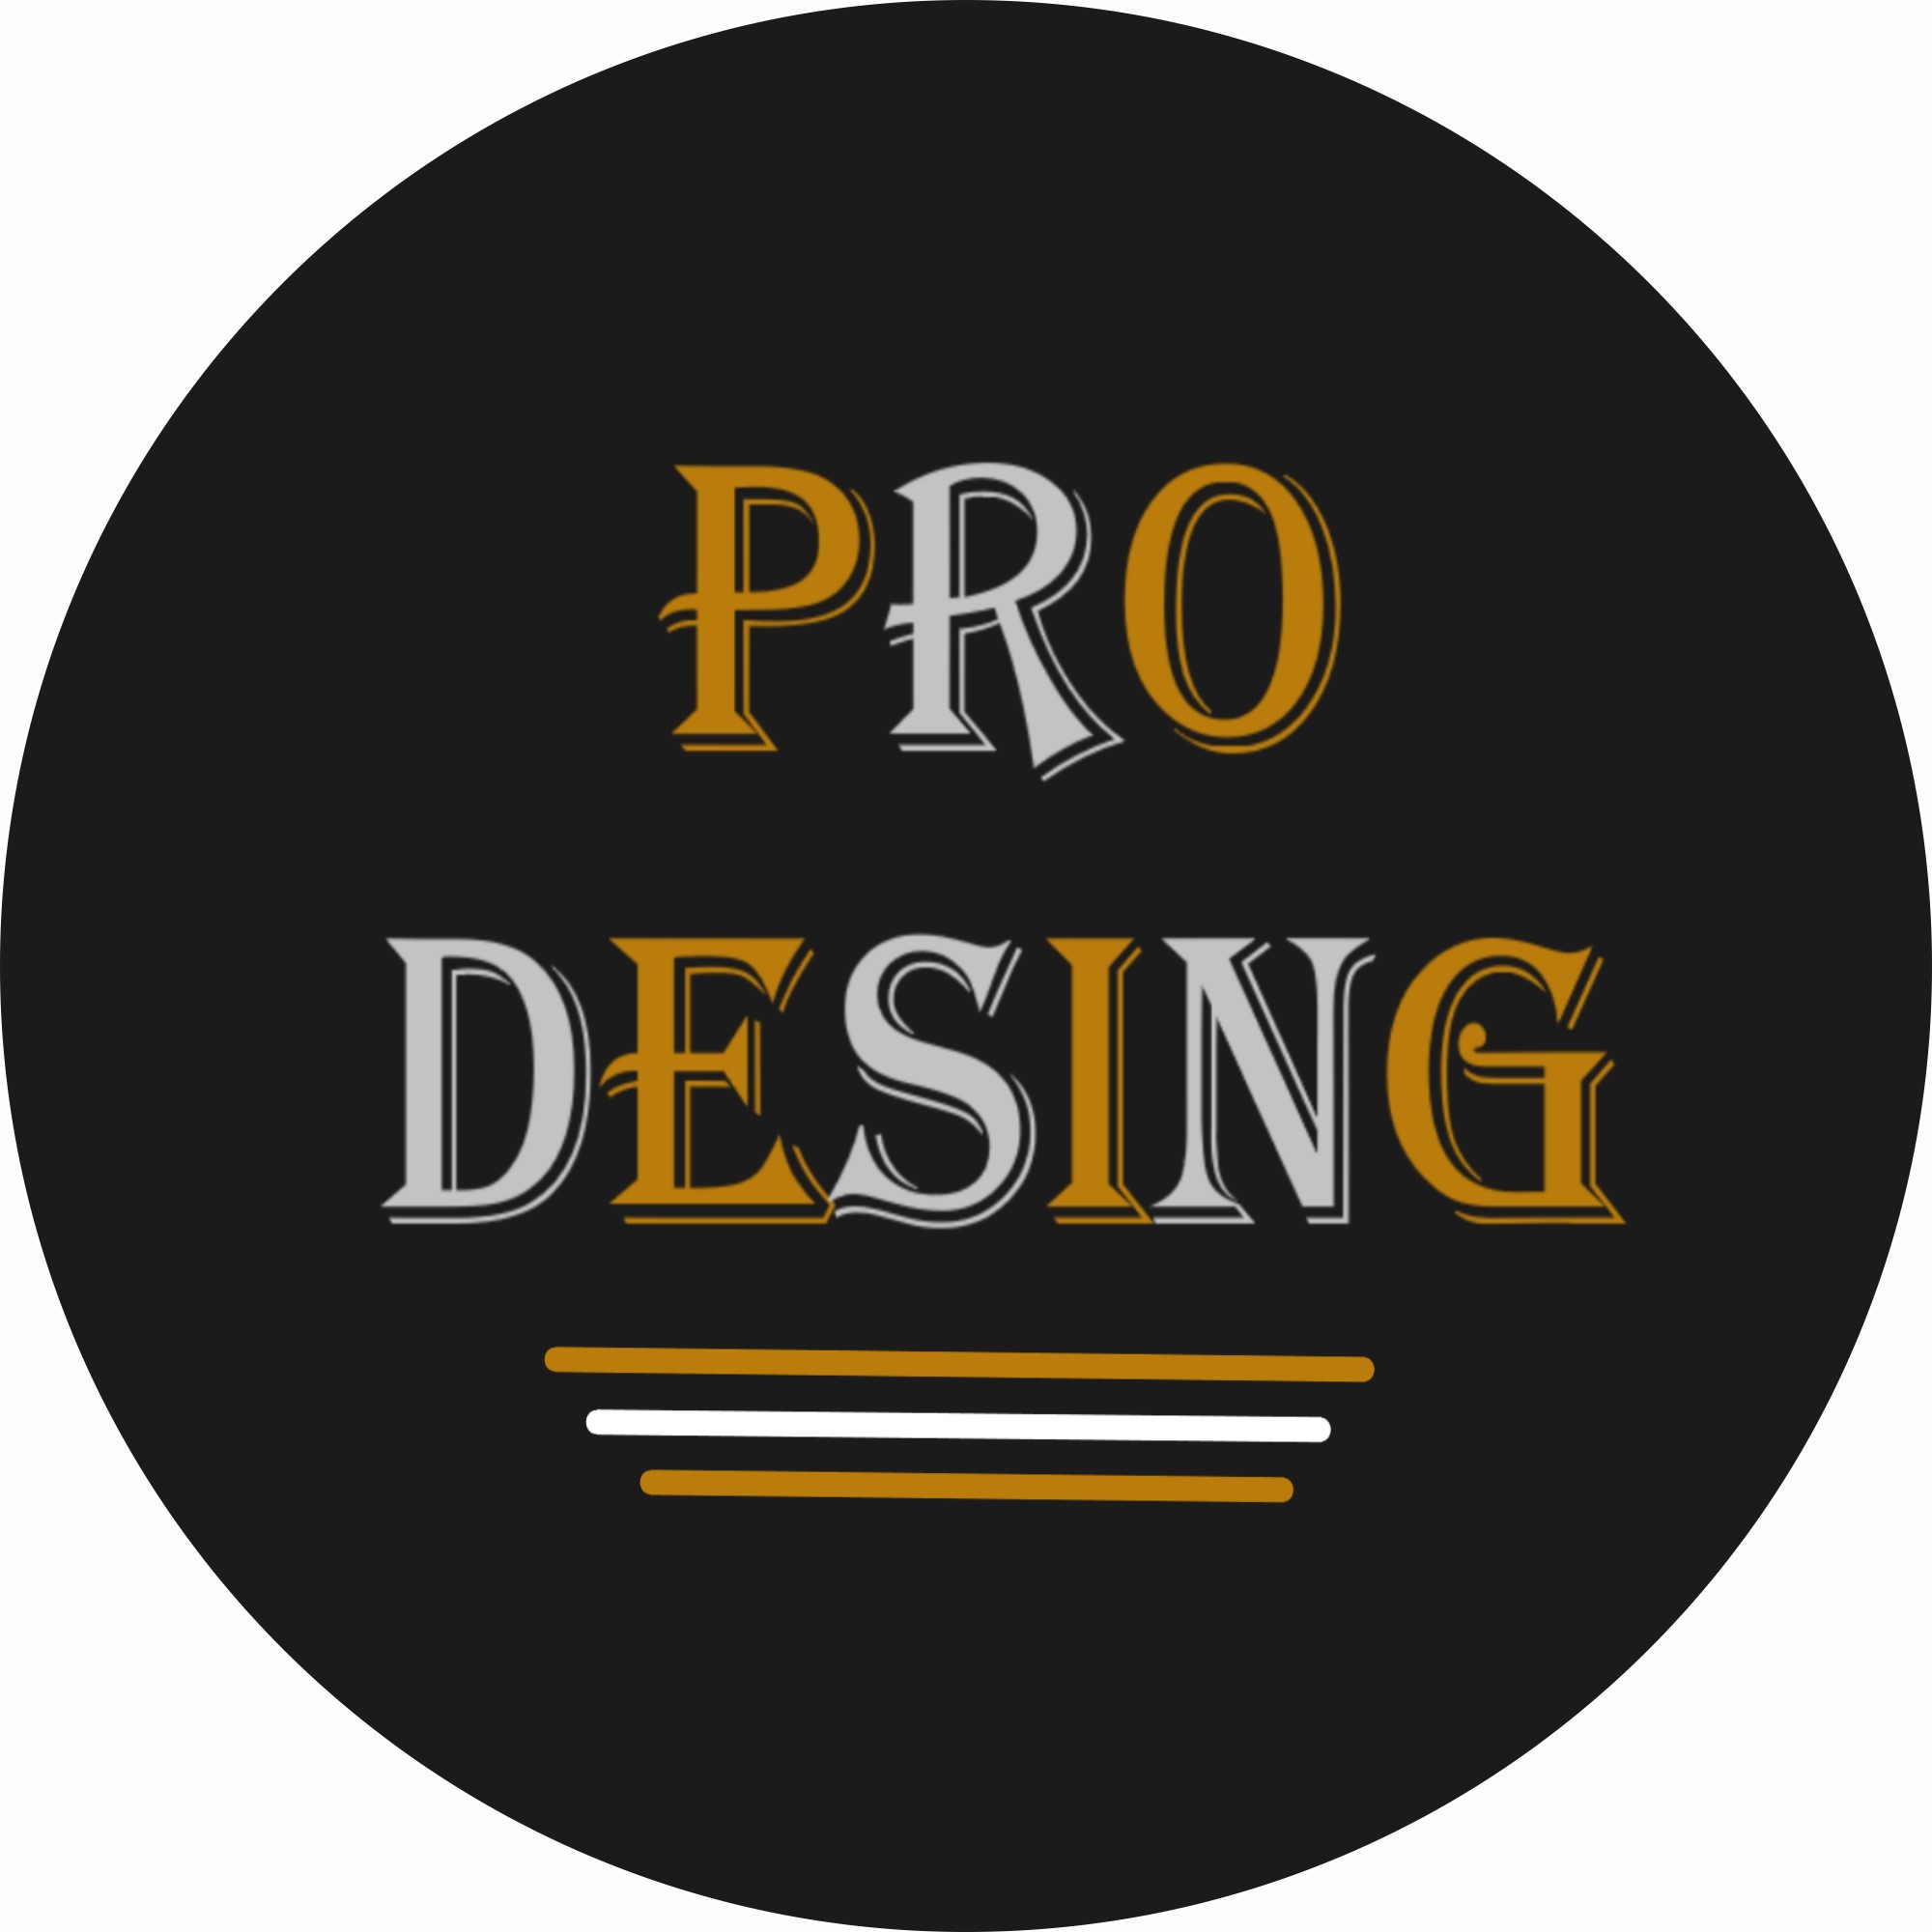 Pro-Desing